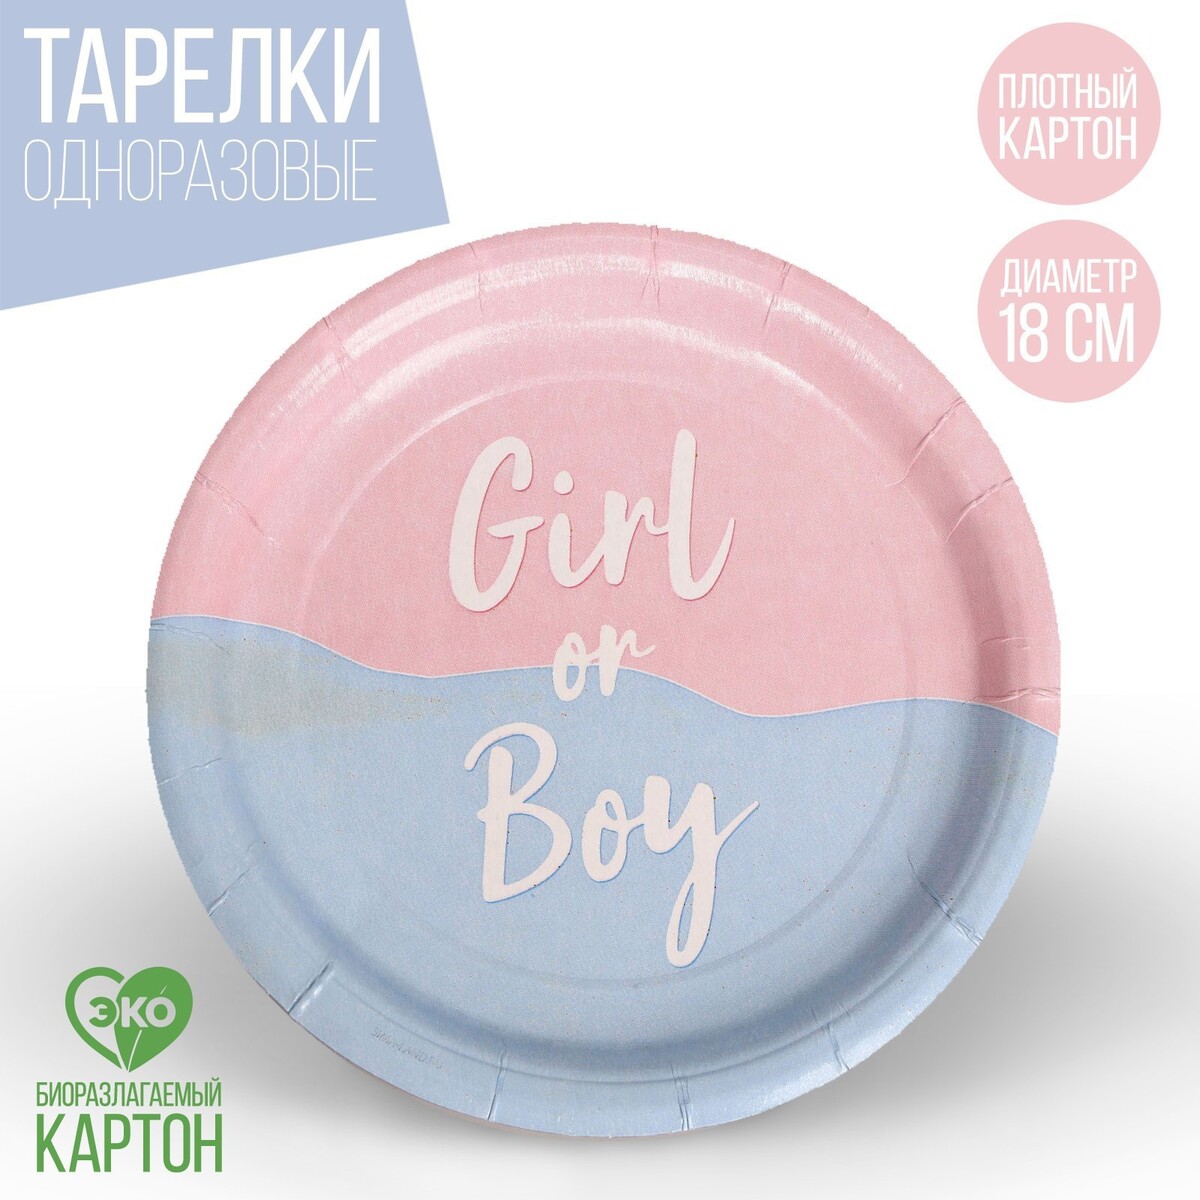 Тарелка одноразовая бумажная girl or boy, набор 6 шт, 18 см